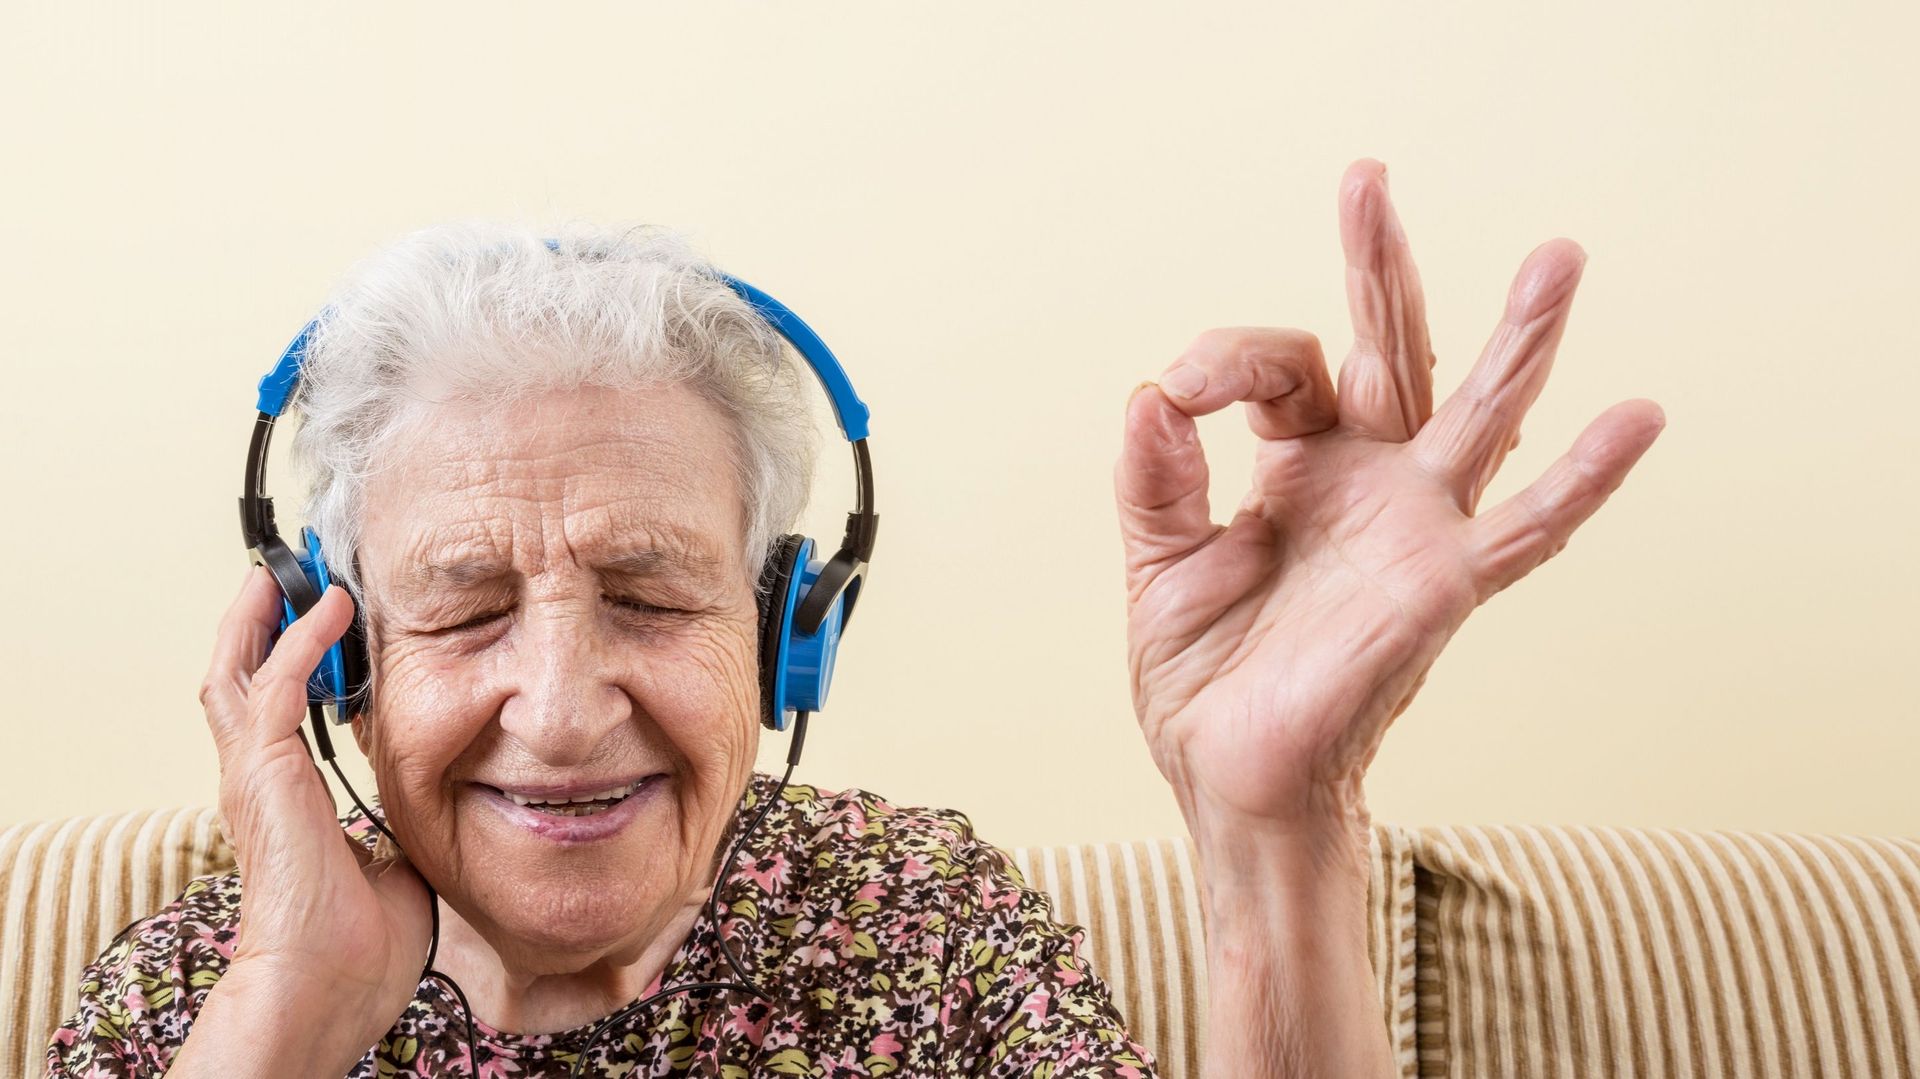 Des chercheurs américains ont constaté que la musique améliore l’humeur des personnes atteintes de démence sénile.